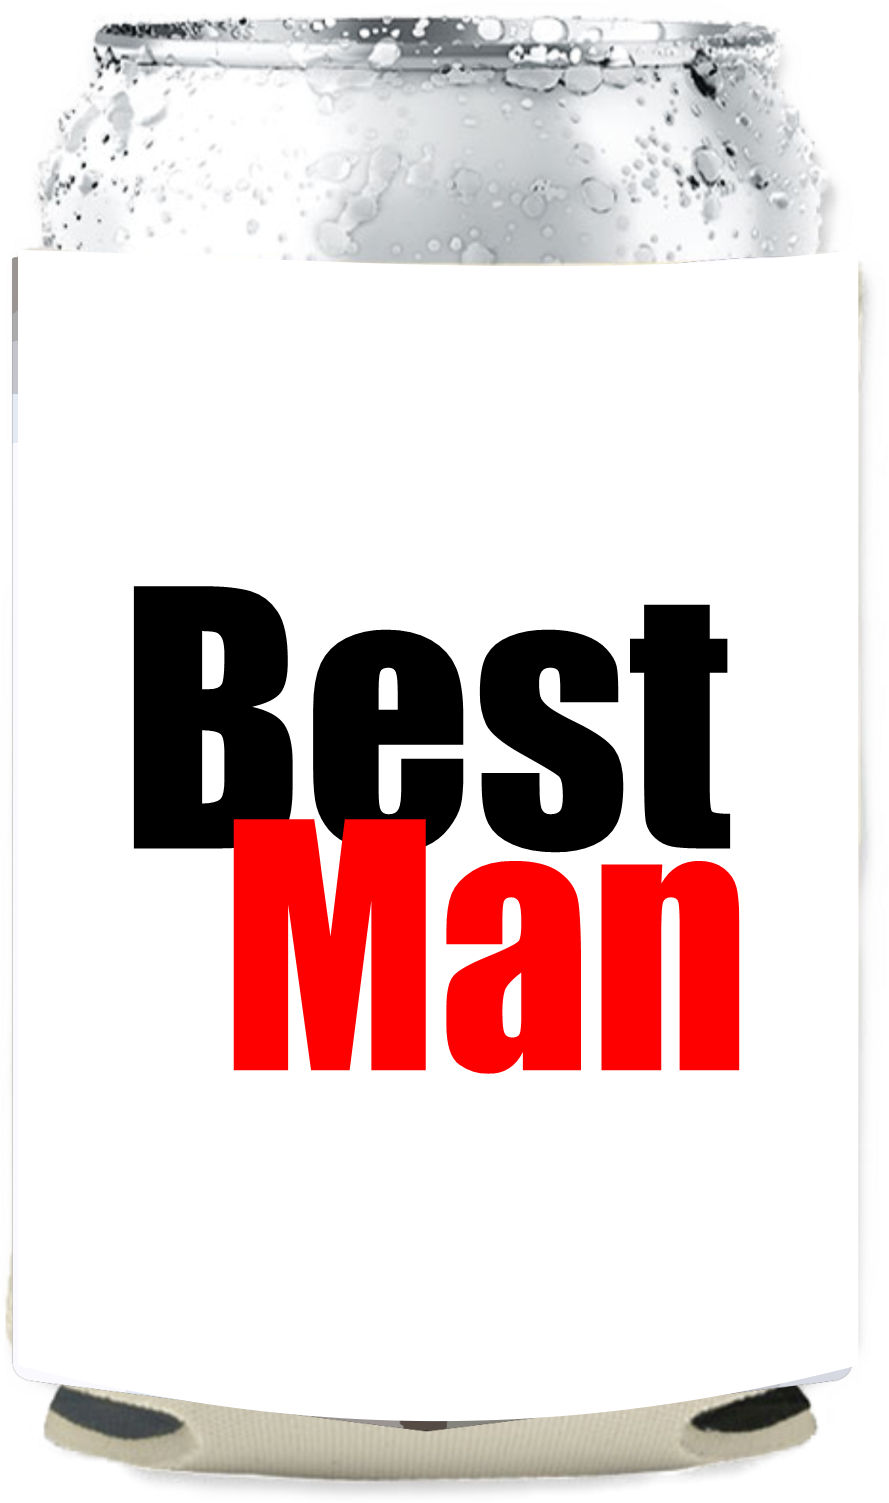 Best Man